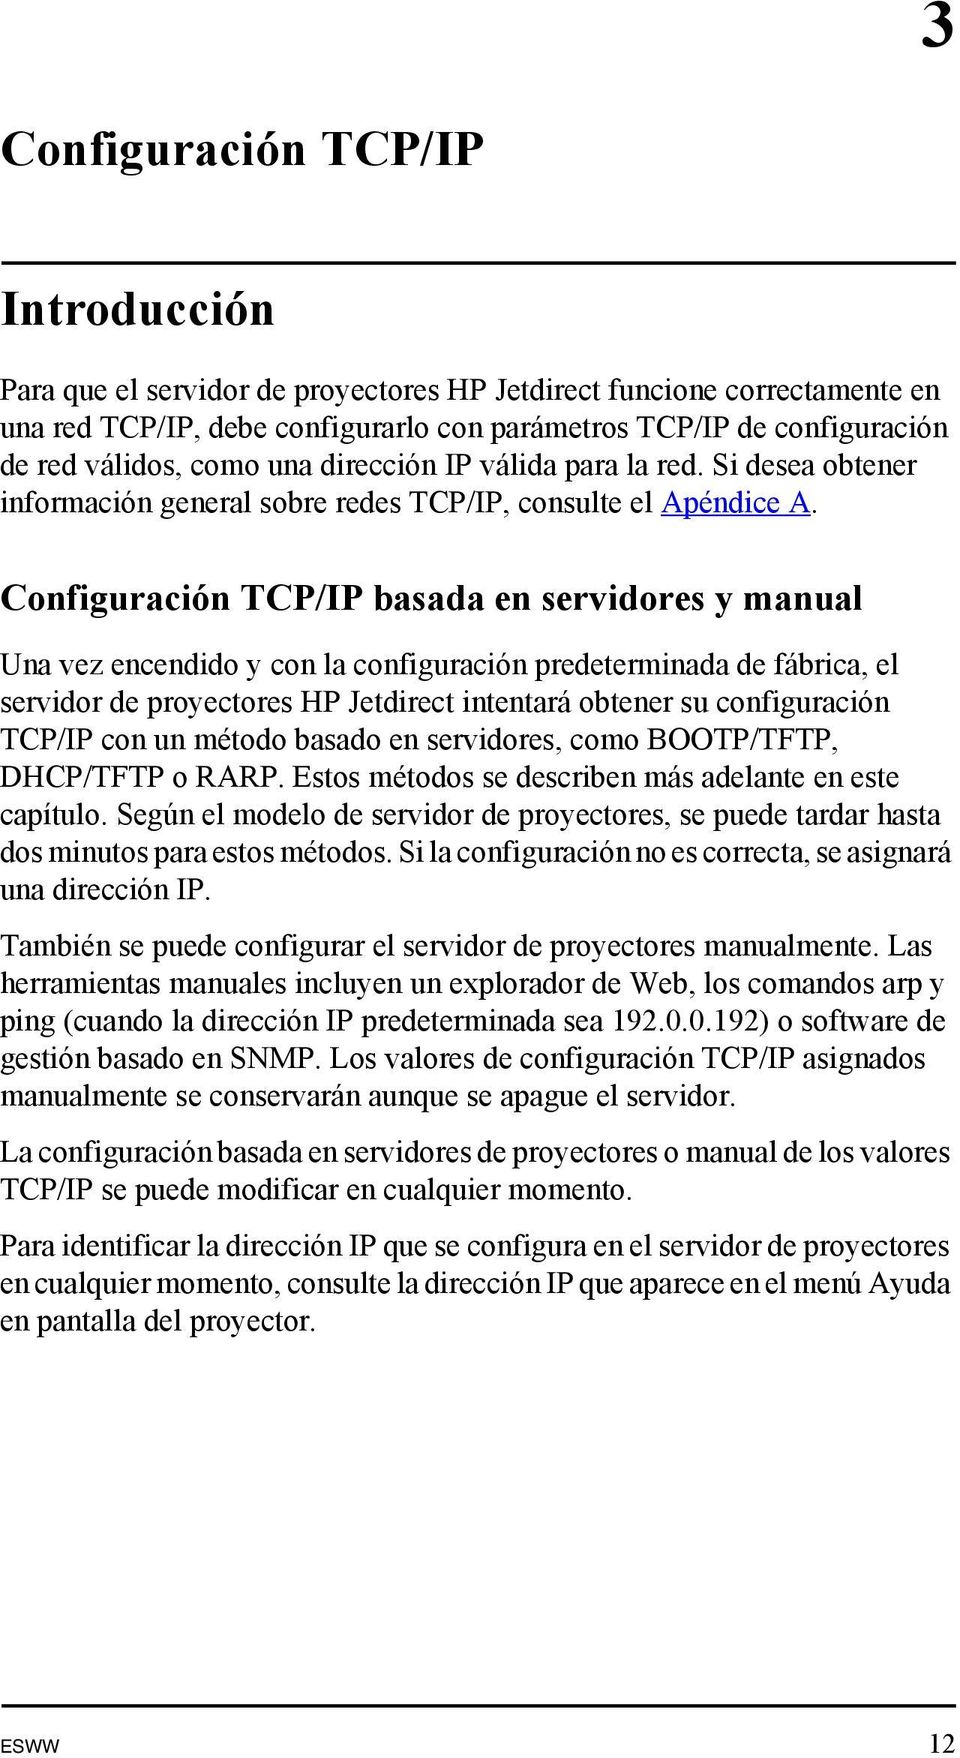 Configuración TCP/IP basada en servidores y manual Una vez encendido y con la configuración predeterminada de fábrica, el servidor de proyectores HP Jetdirect intentará obtener su configuración